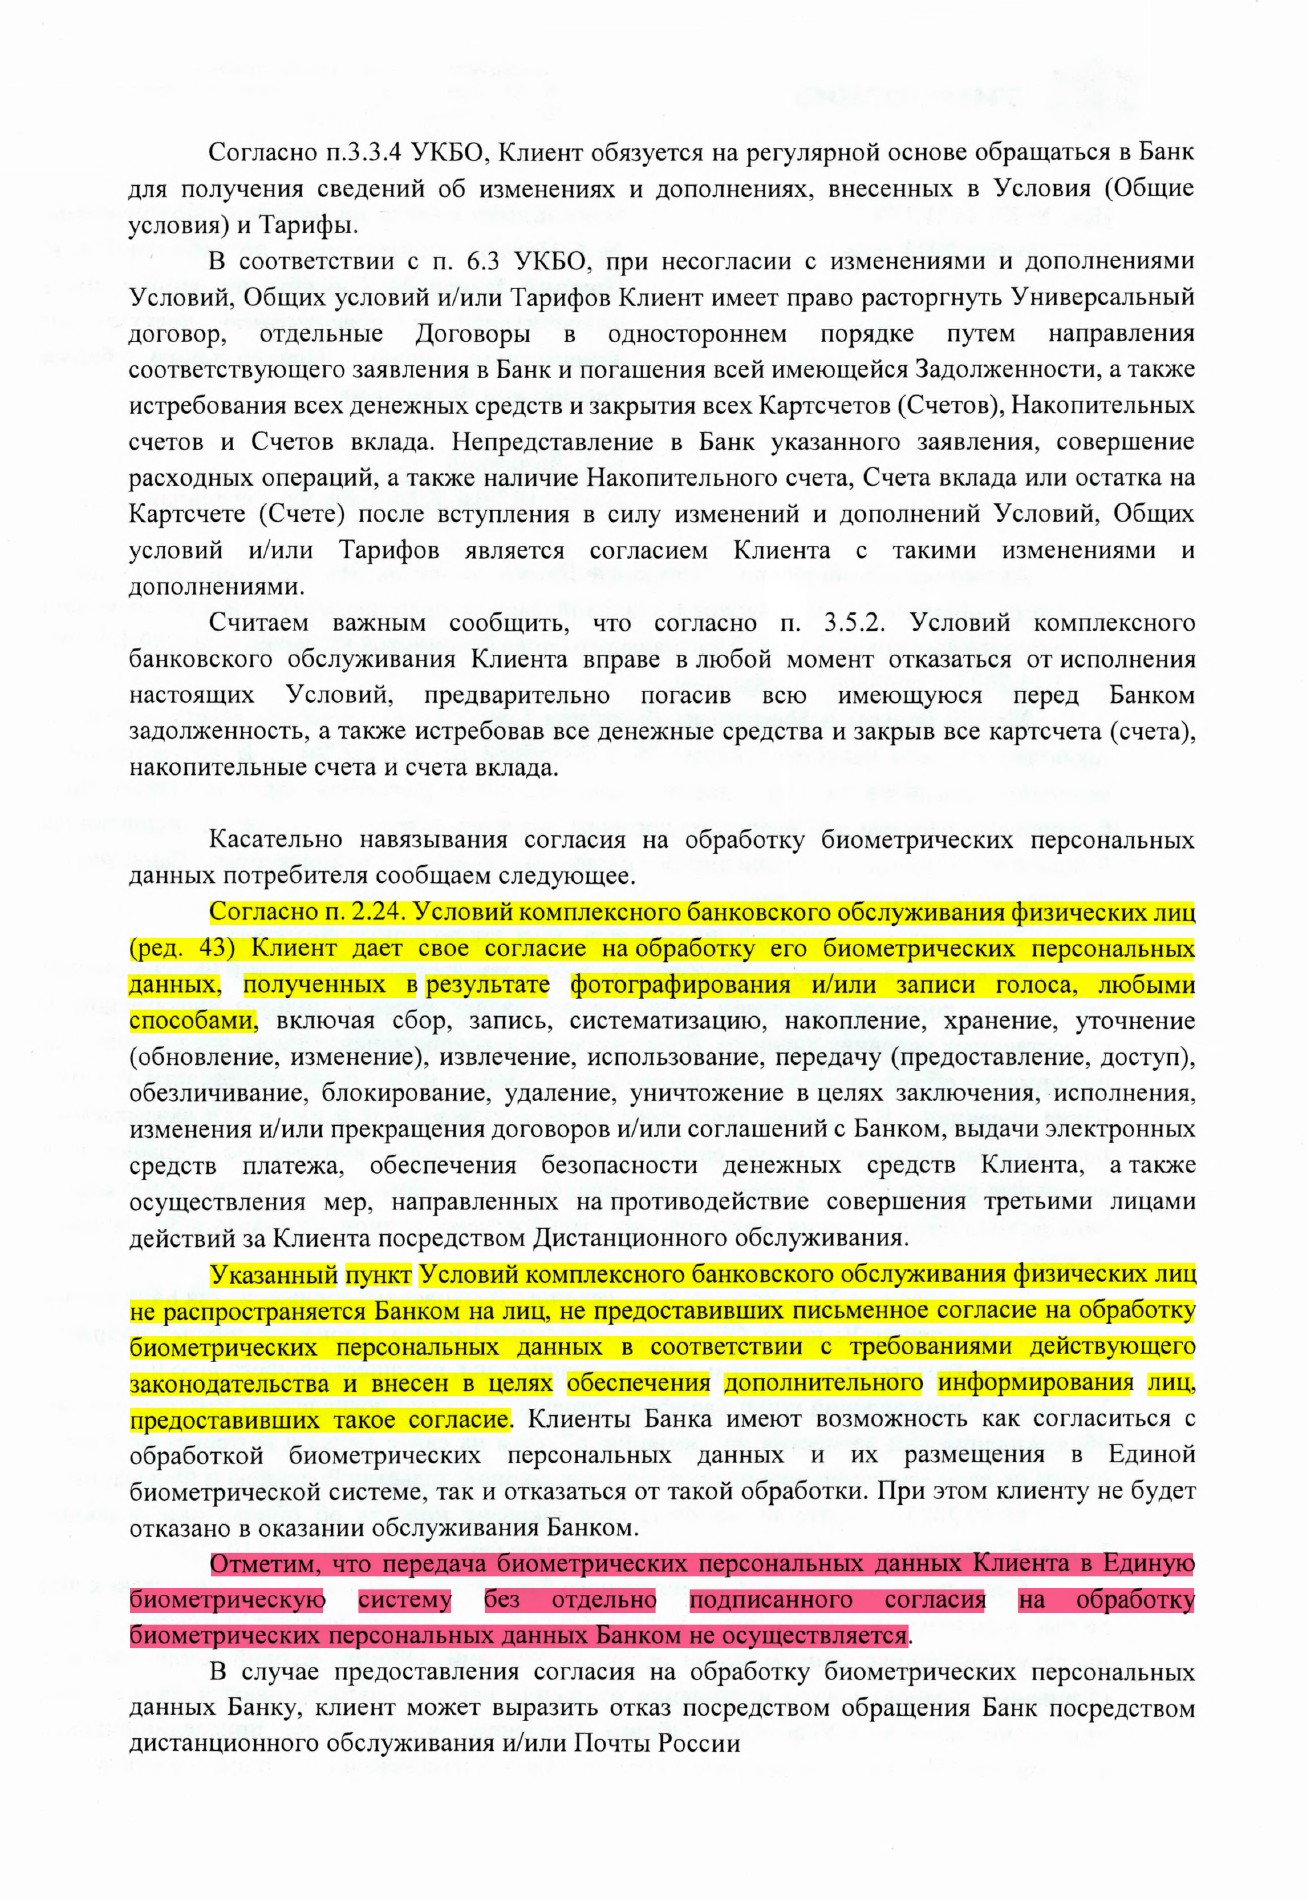 Тинькофф дает противоречащие ответы Роскомнадзору и ЦБ РФ в части дачи клиентом согласия на обработку его биометрии - 11